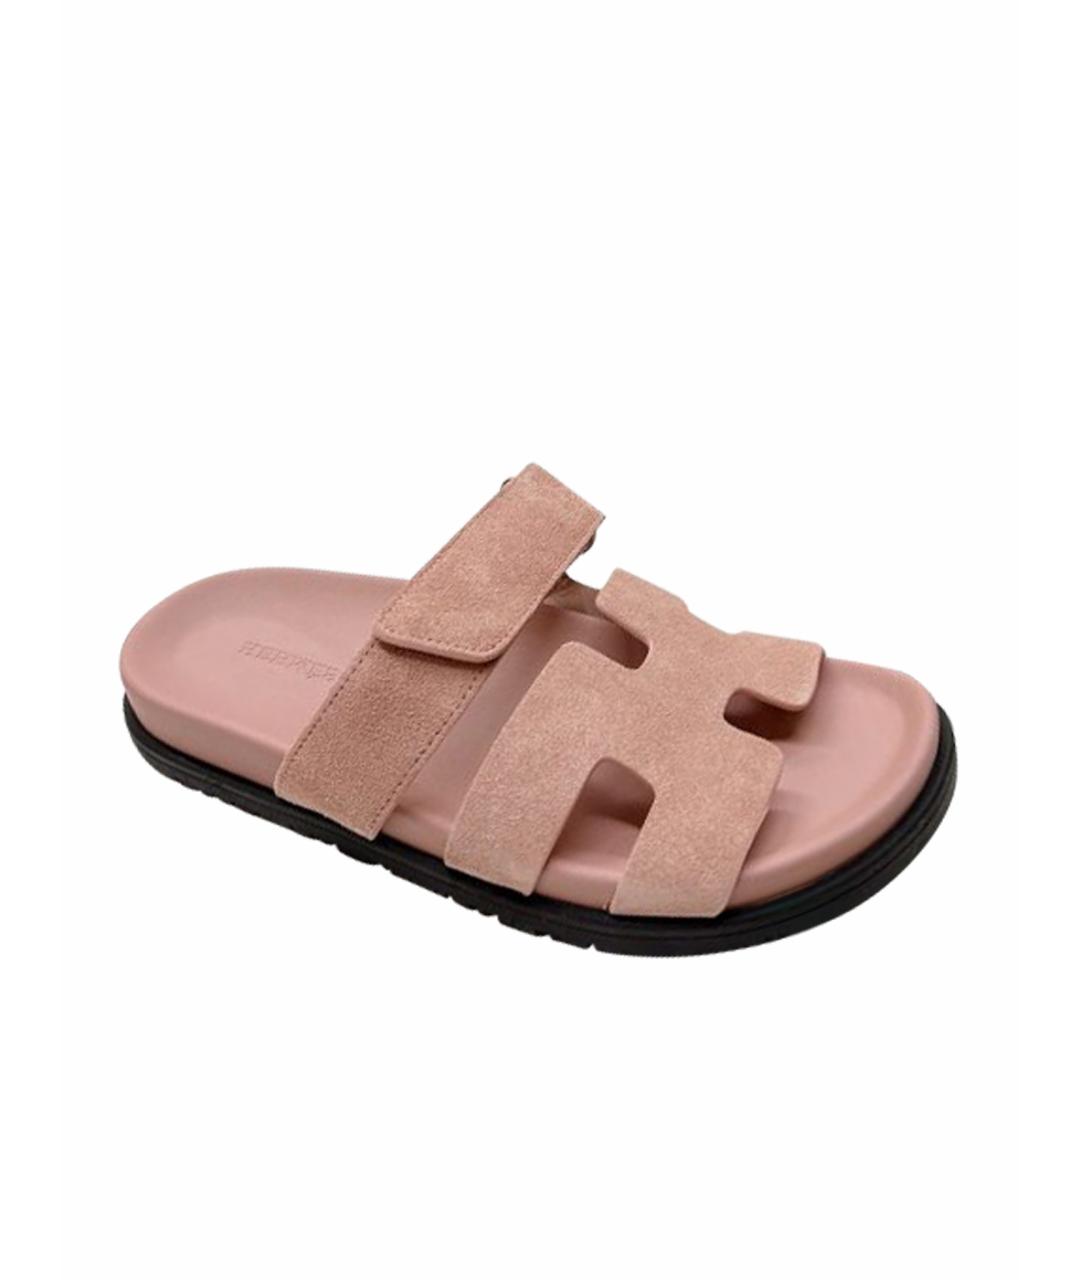 HERMES PRE-OWNED Розовые кожаные сандалии, фото 1